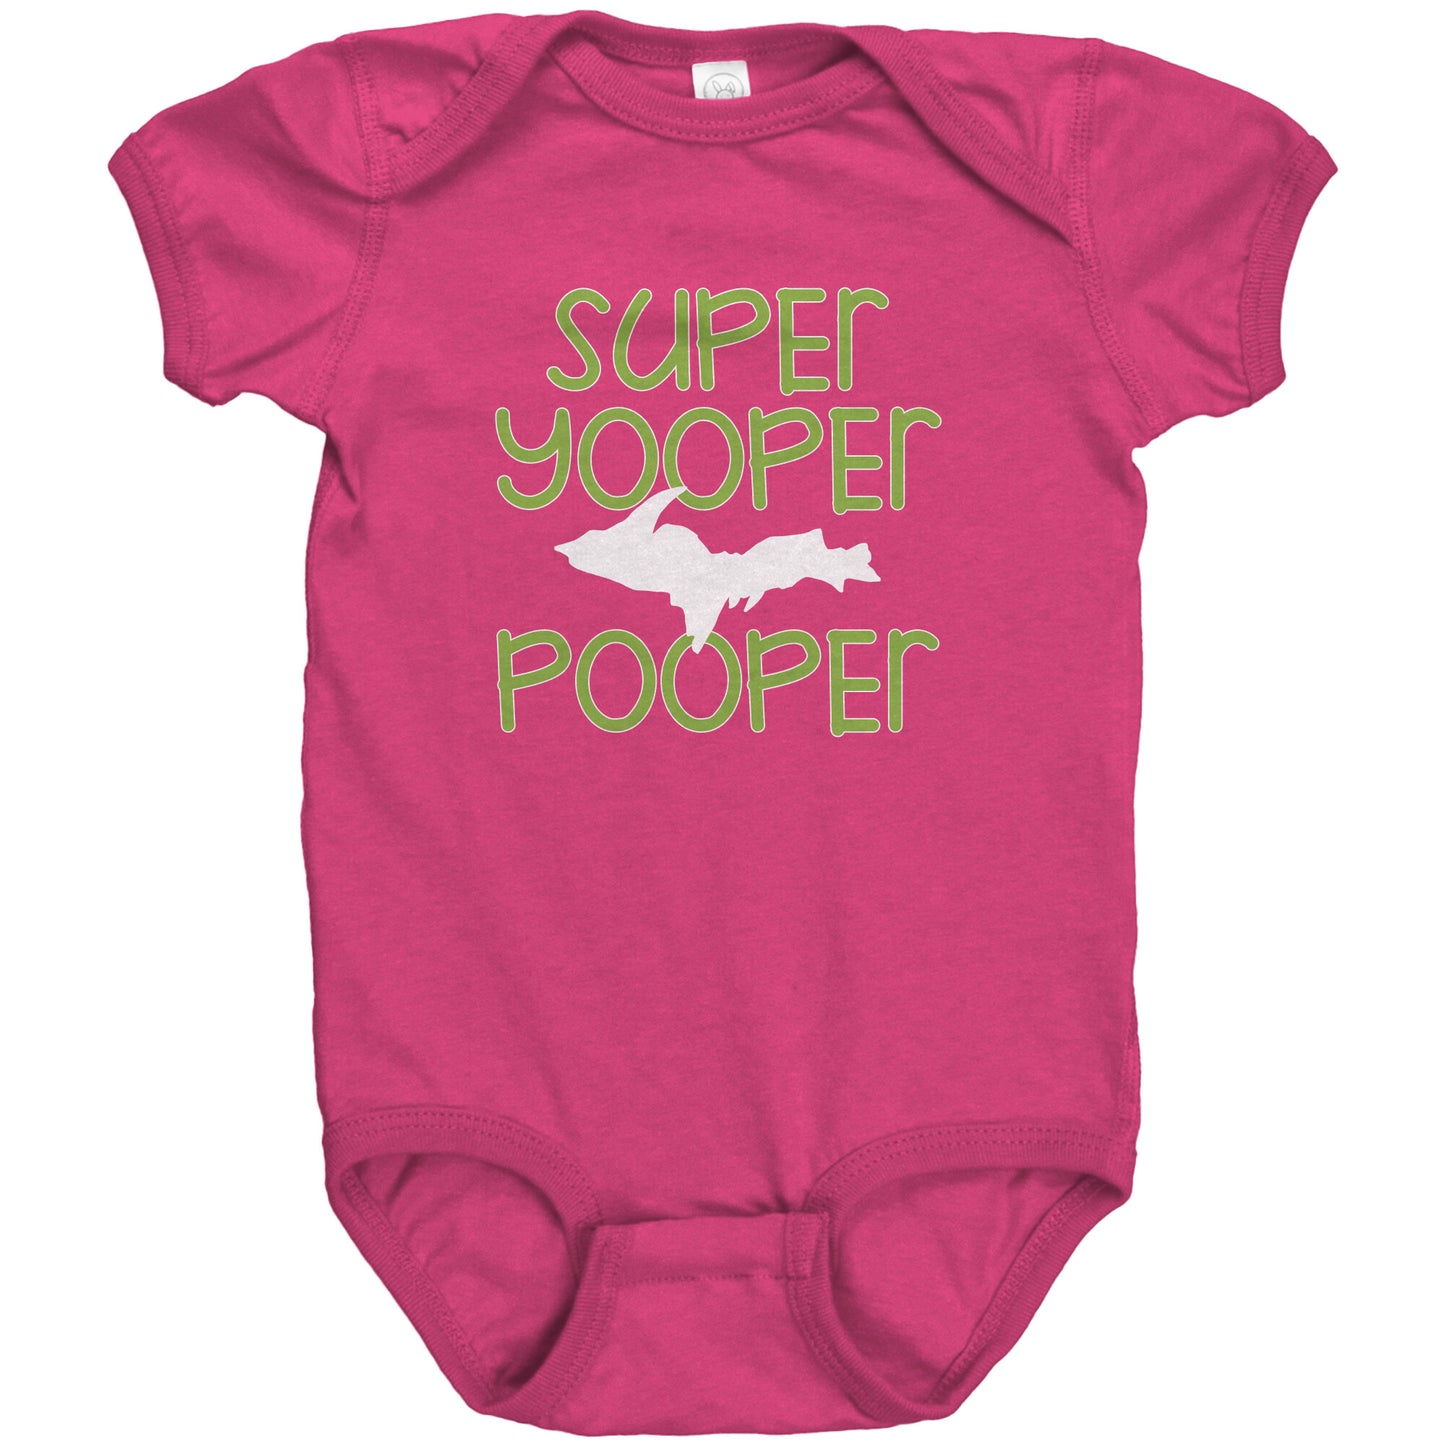 Super Yooper Pooper Baby Body Suit | Upper Michigan Romper | Infant One Piece